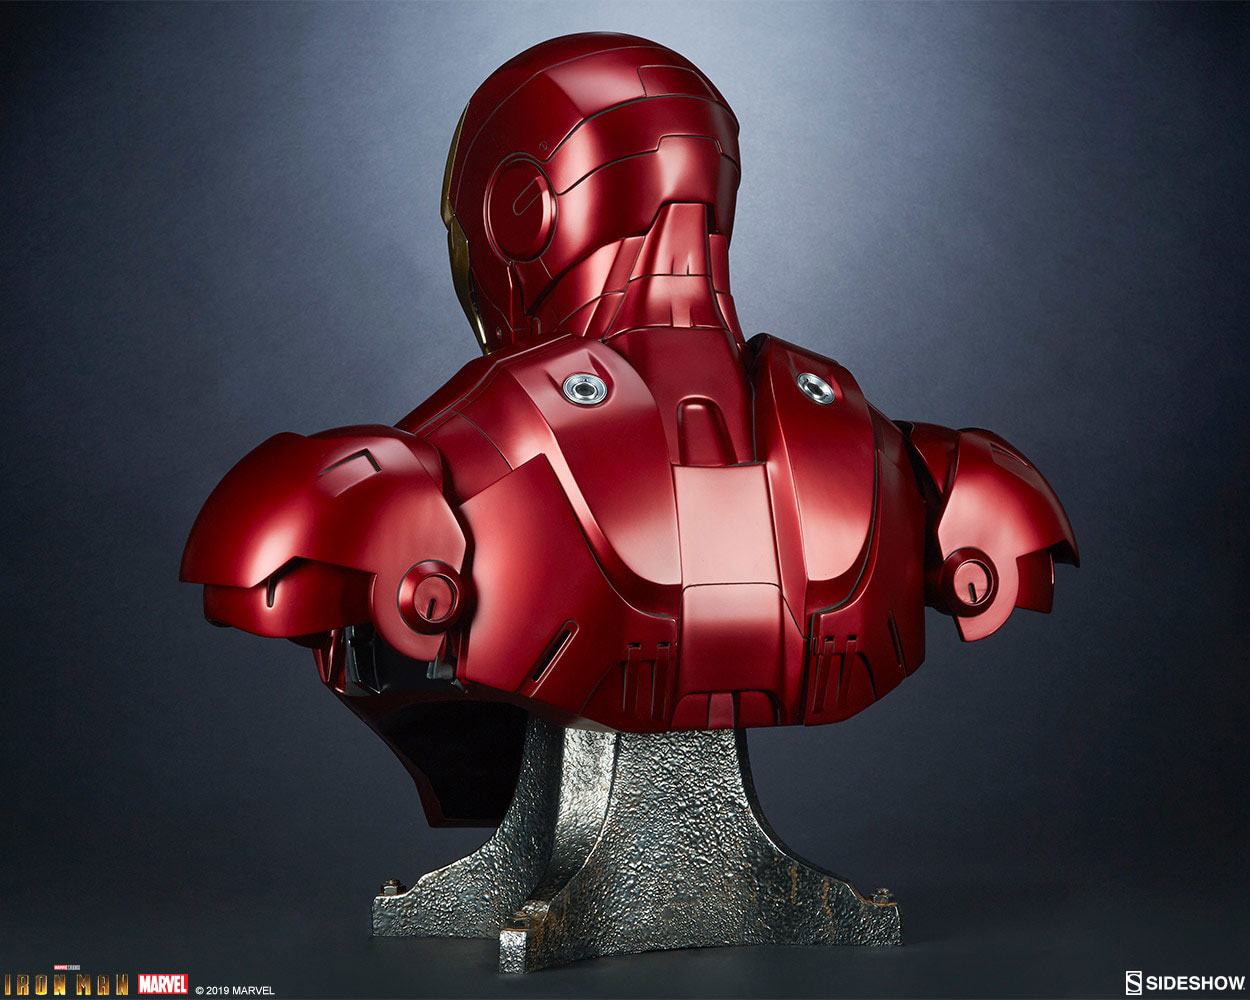 Iron Man Mark 3 Life-Size Statue - Spec Fiction Shop